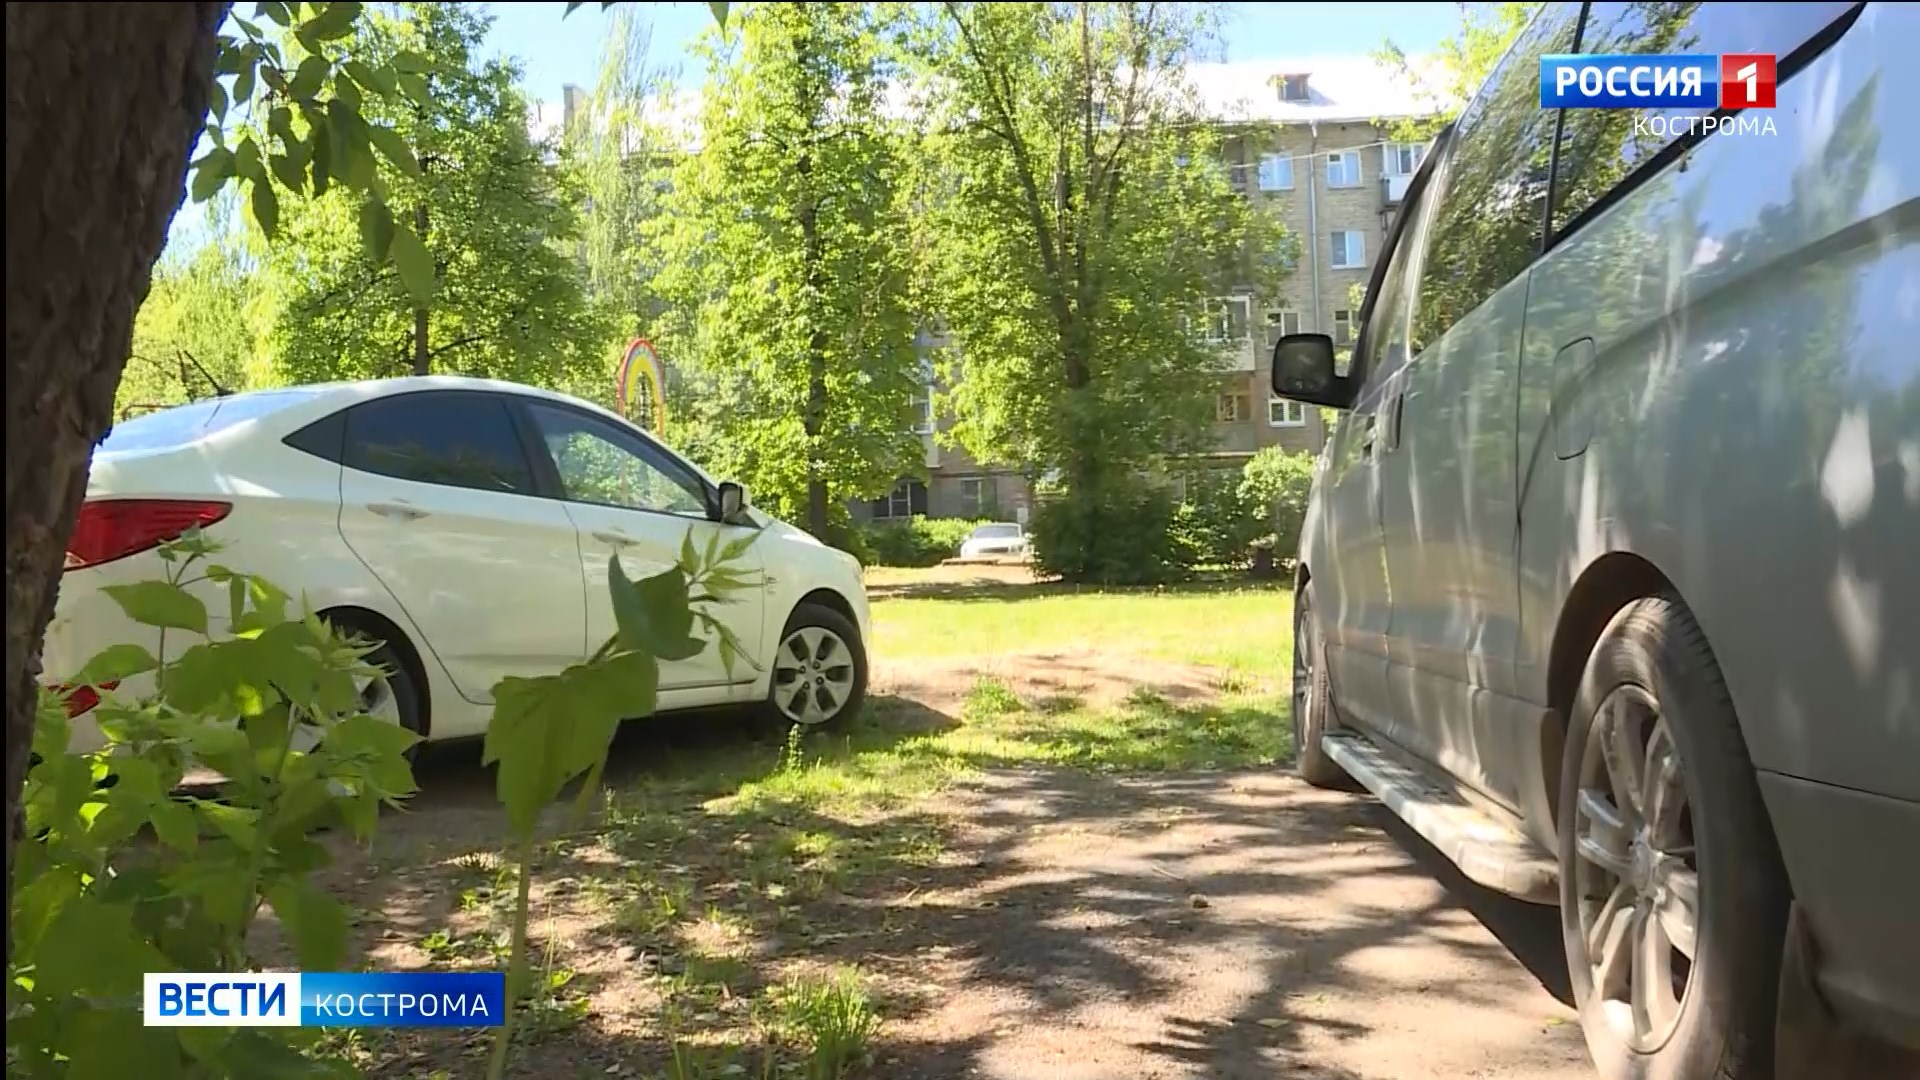 В Костроме начали активно выявлять нарушителей правил парковки у многоквартирных домов